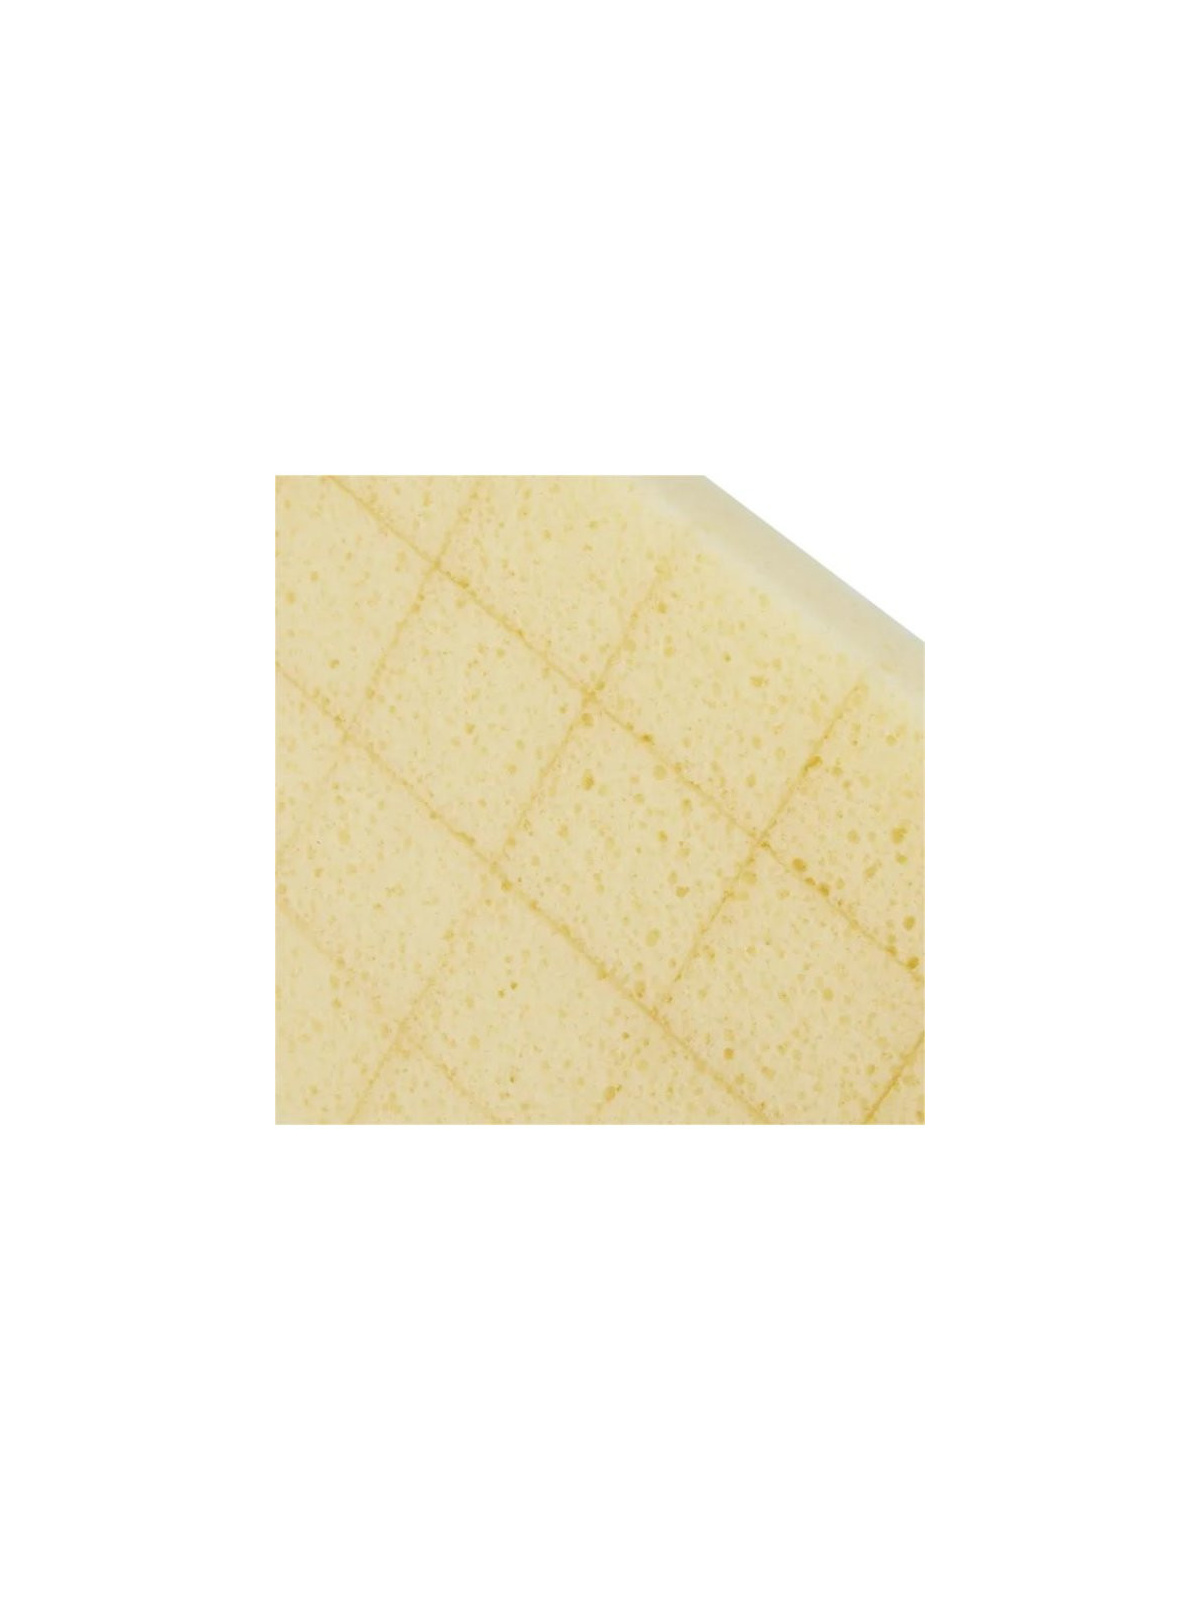 HUFA Sponge board 28 x 14 cm rasterized | JVL-Europe